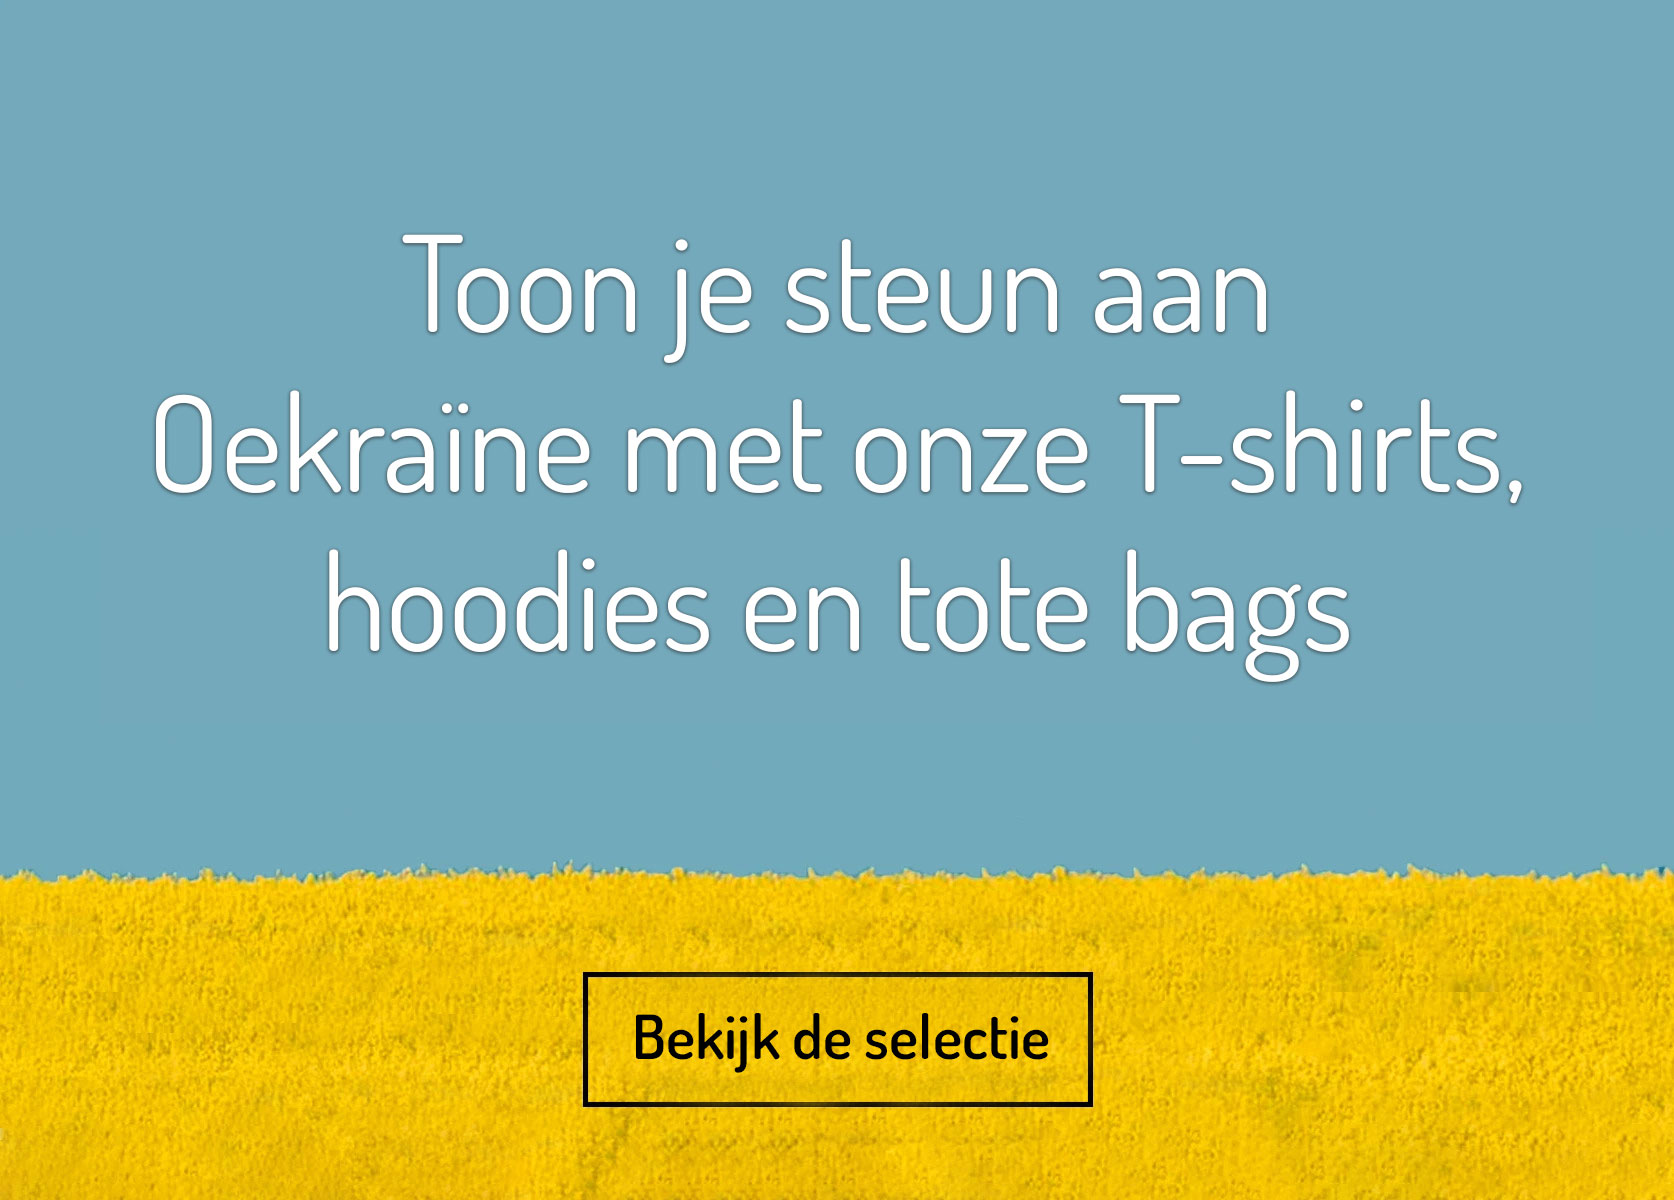 Ukraine t-shirts hoodies